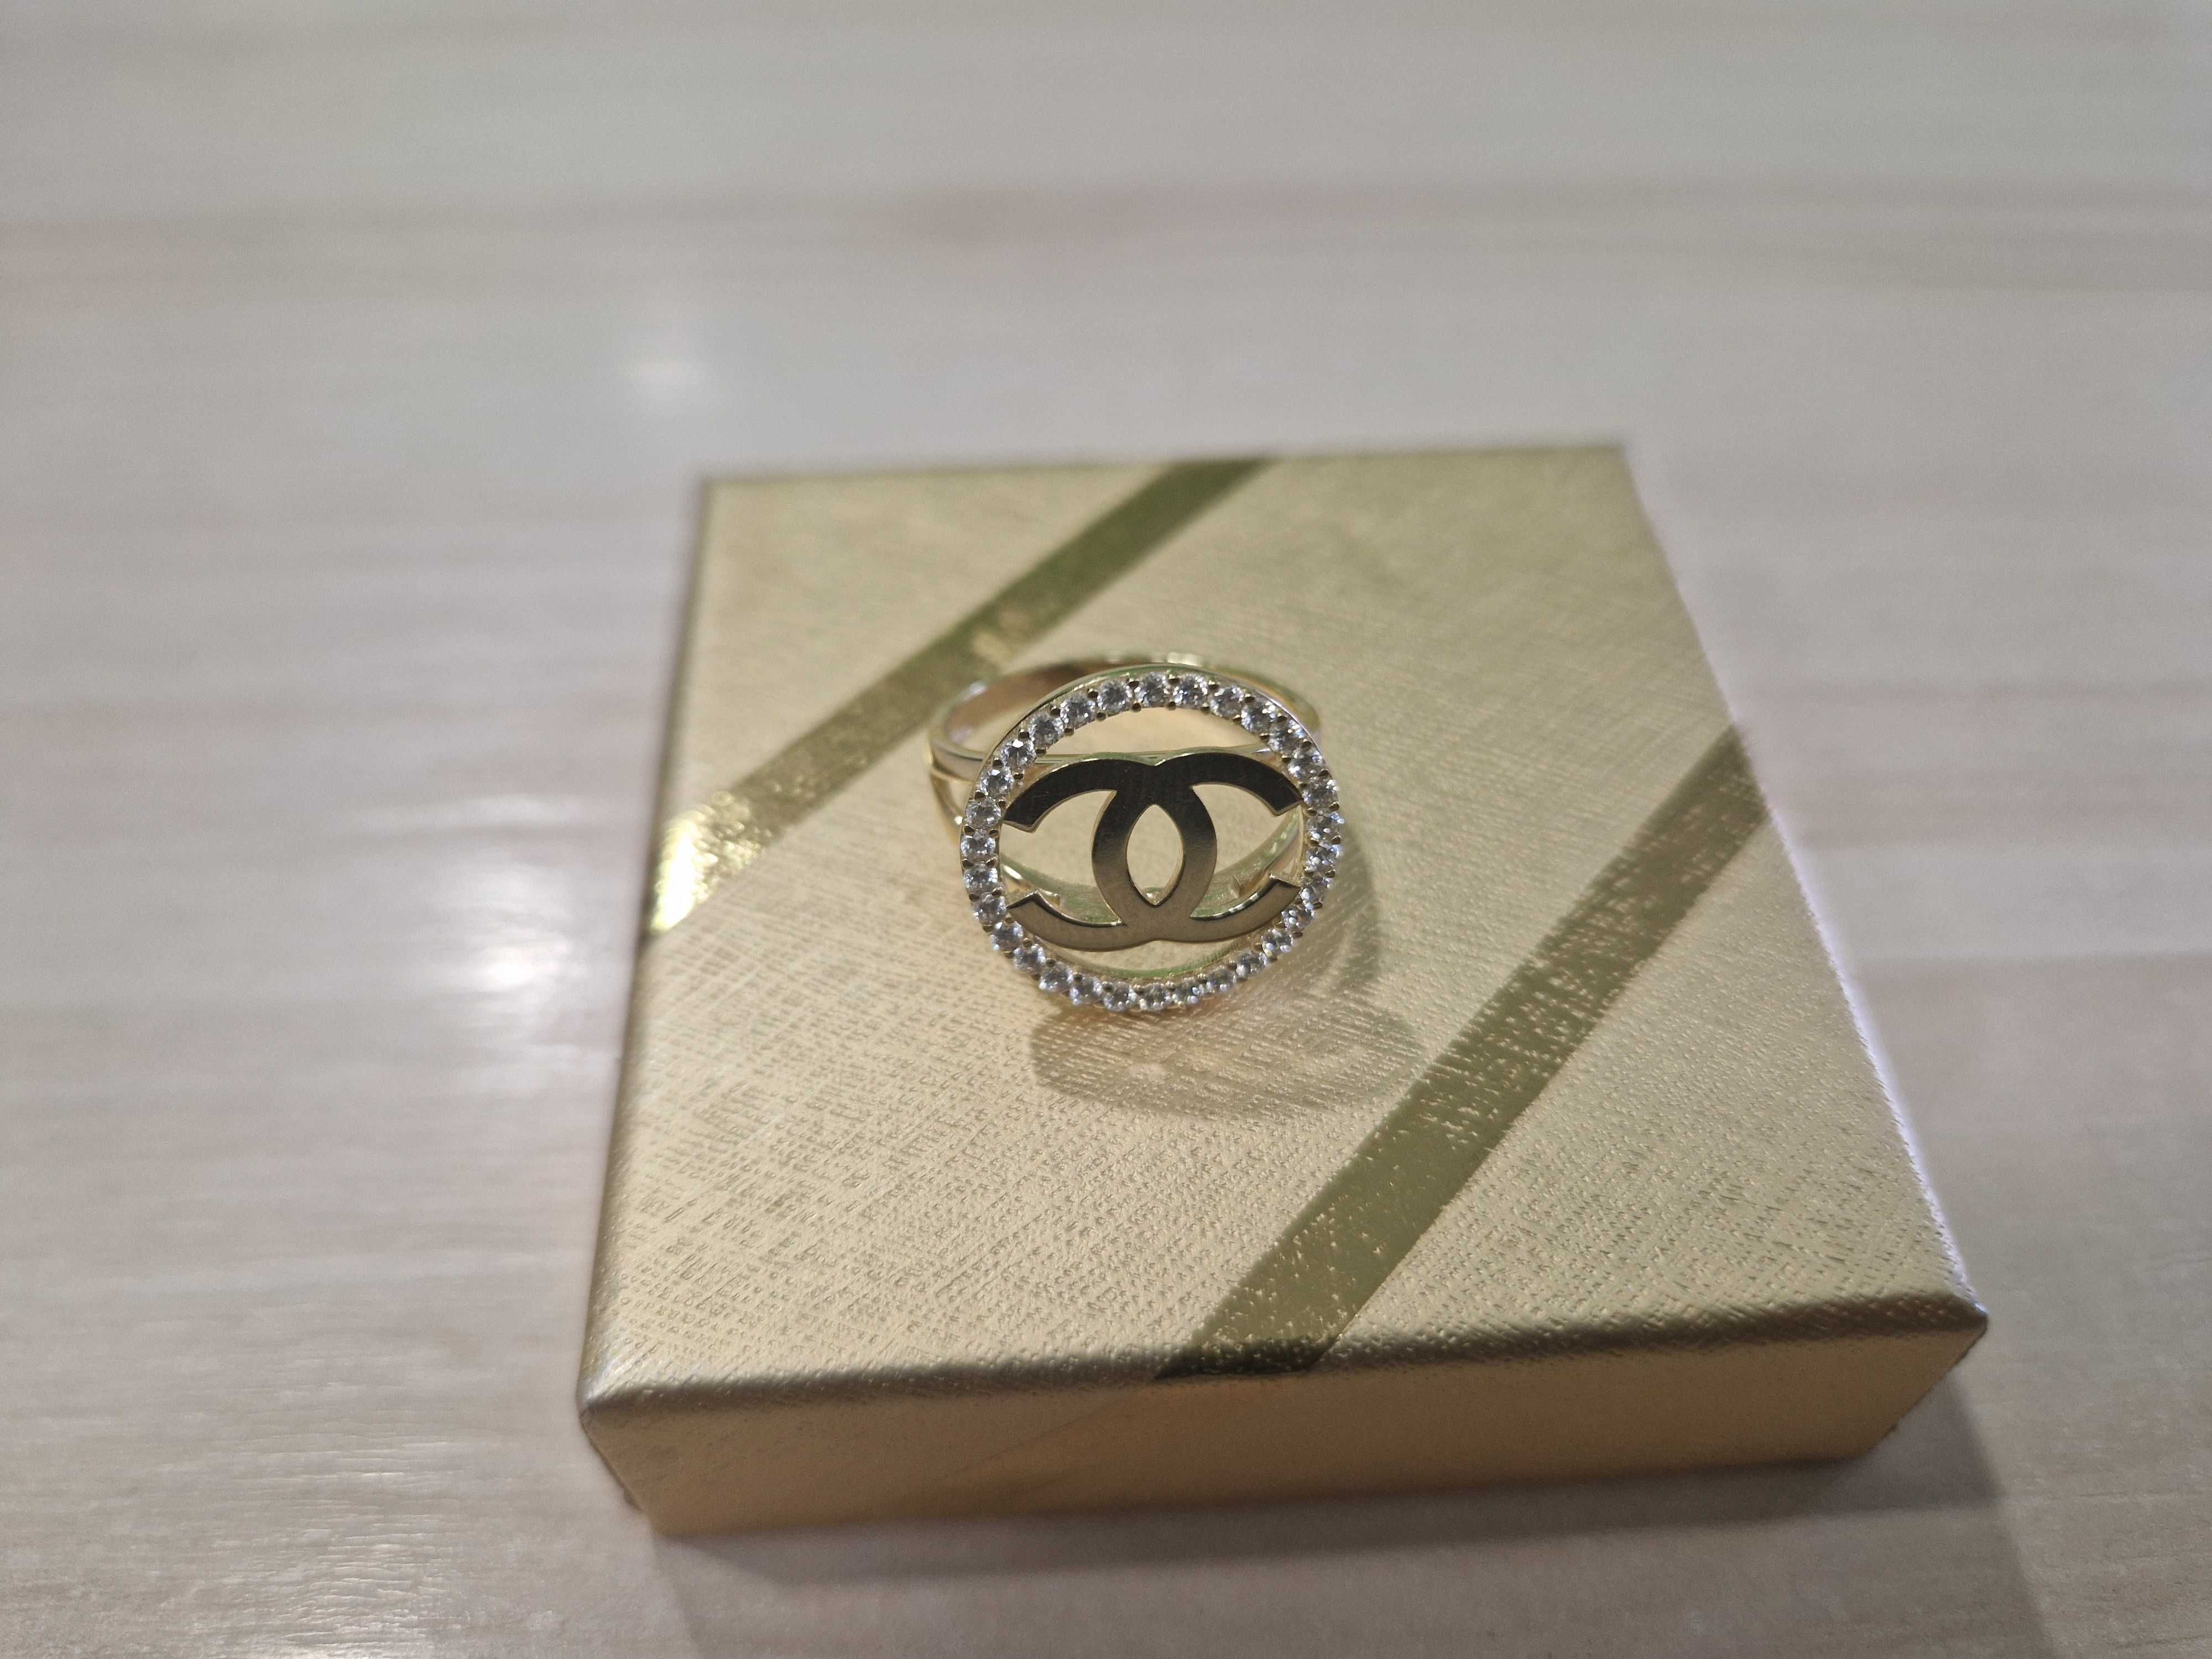 Nowy złoty pierścionek Chanel duża koronka PR 585